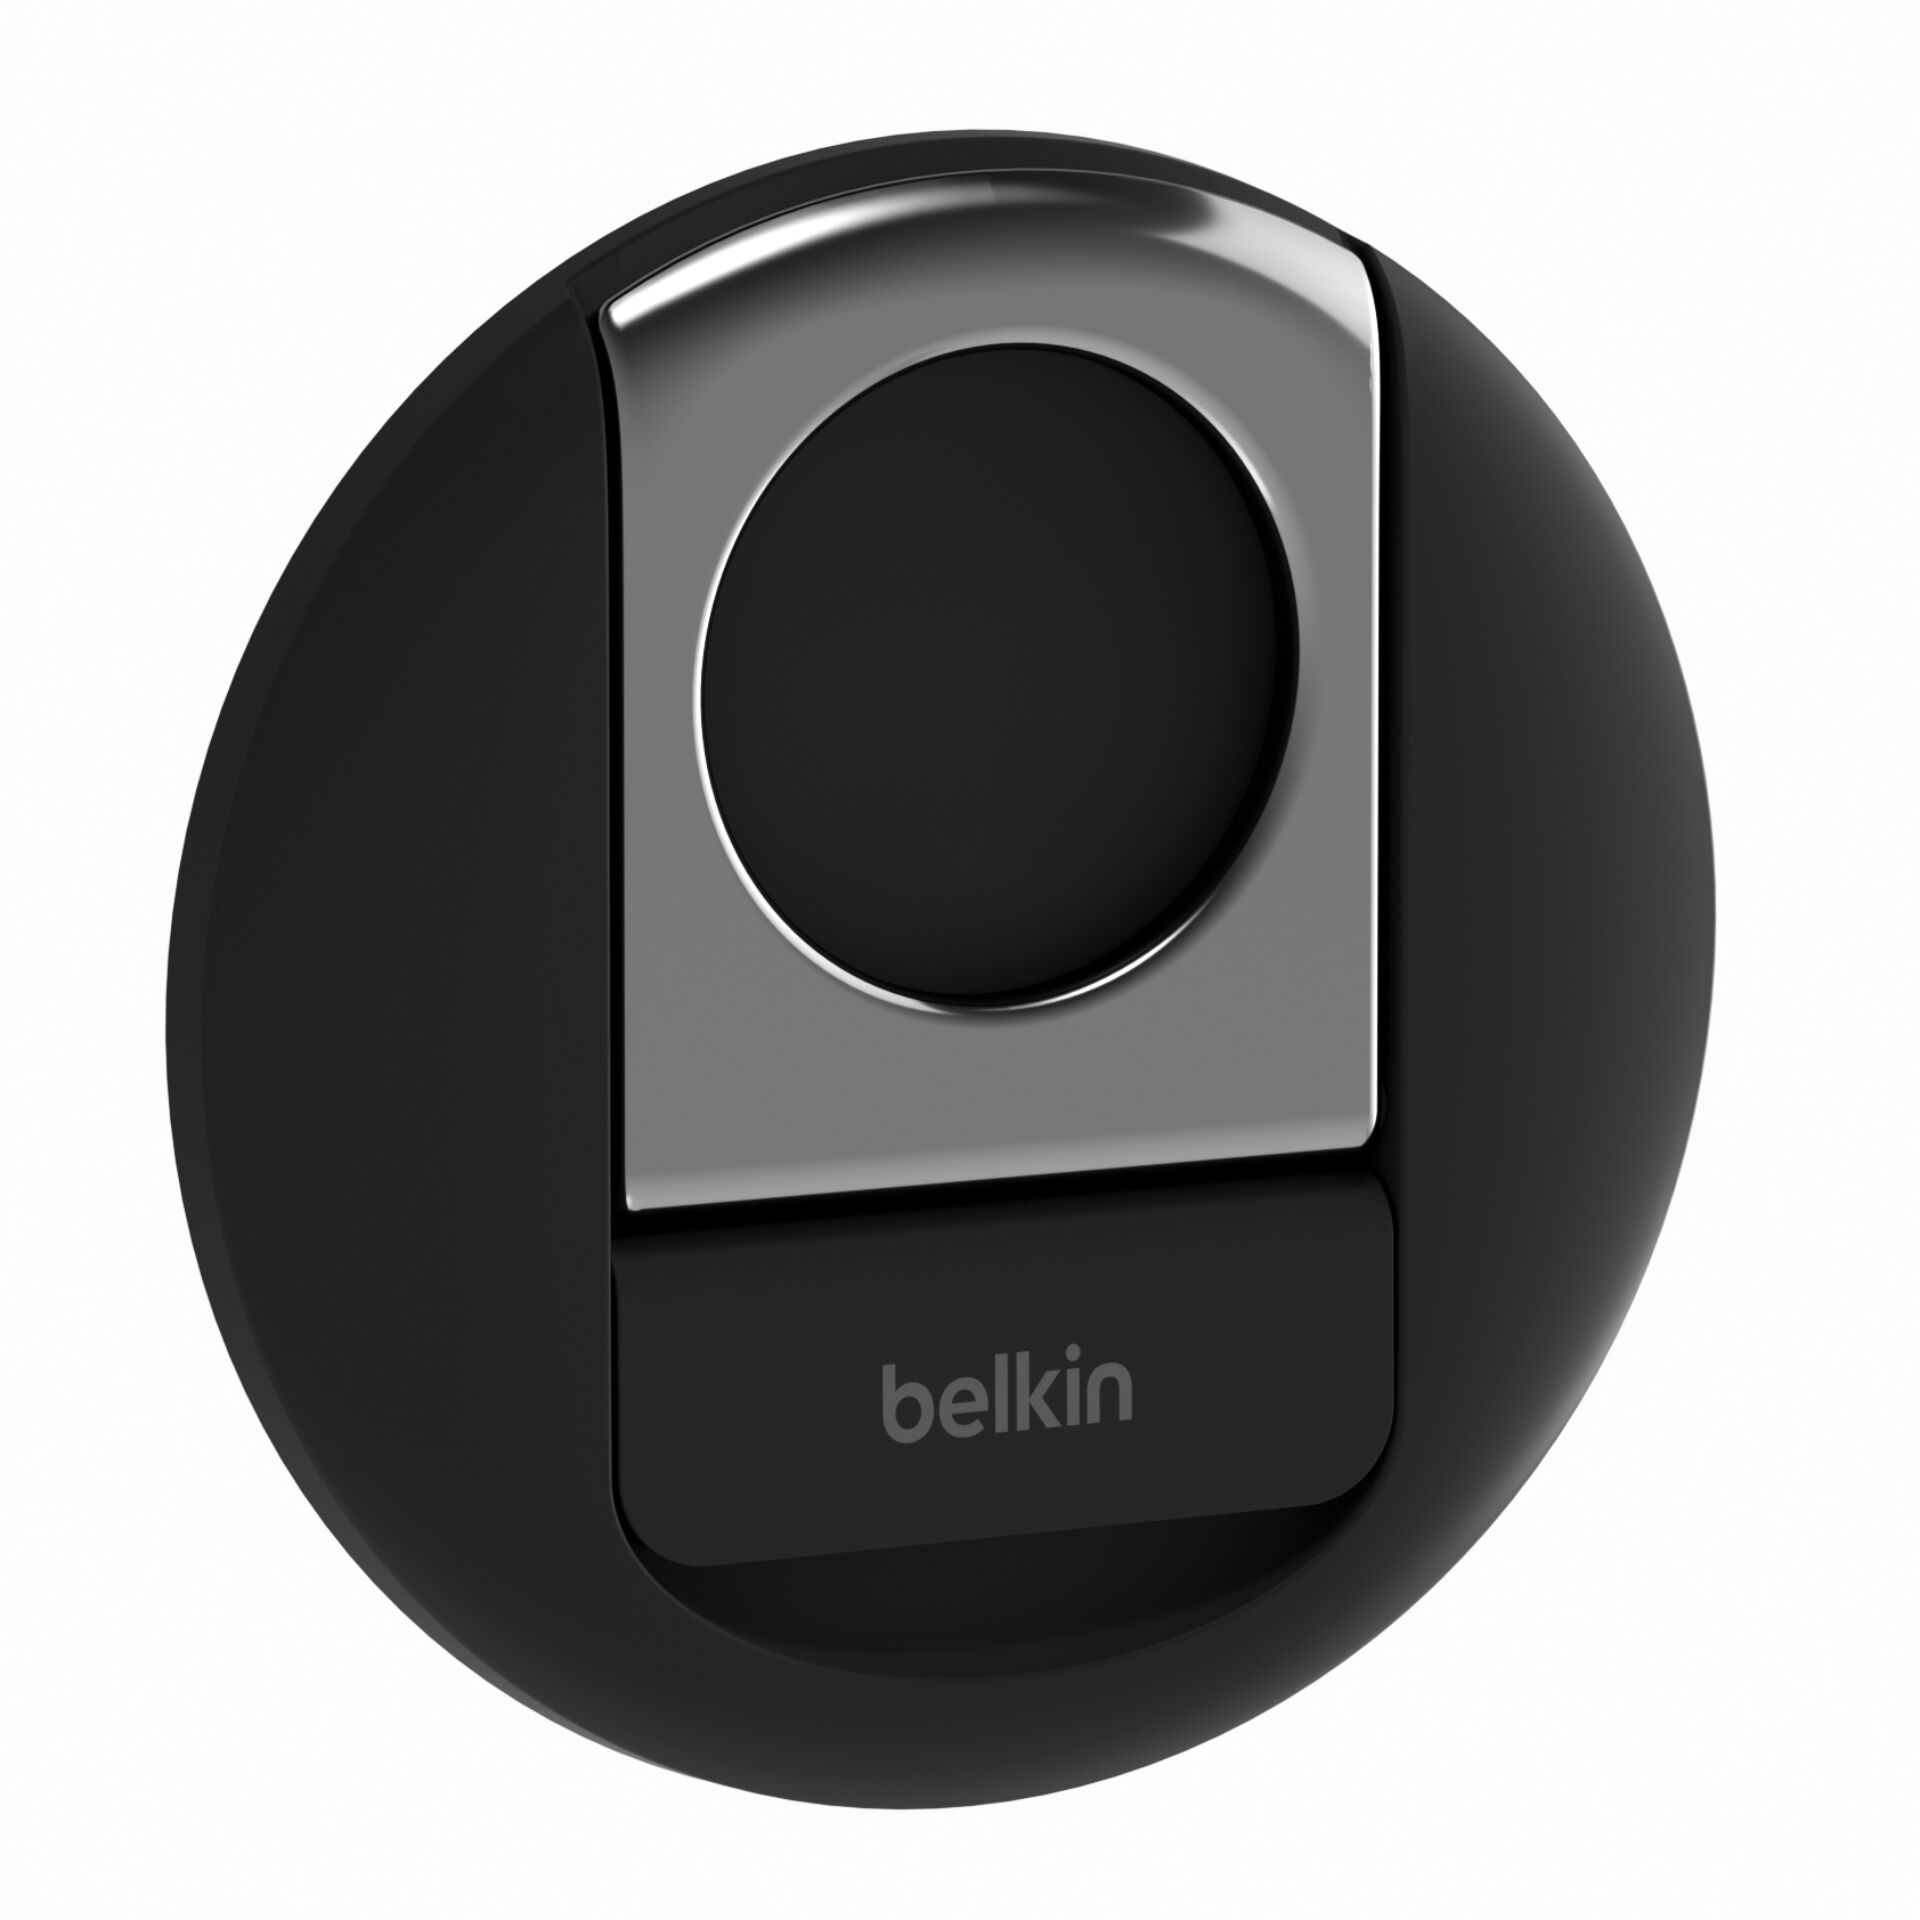 Belkin MMA006btBK Aktive Halterung Handy/Smartphone Schwarz